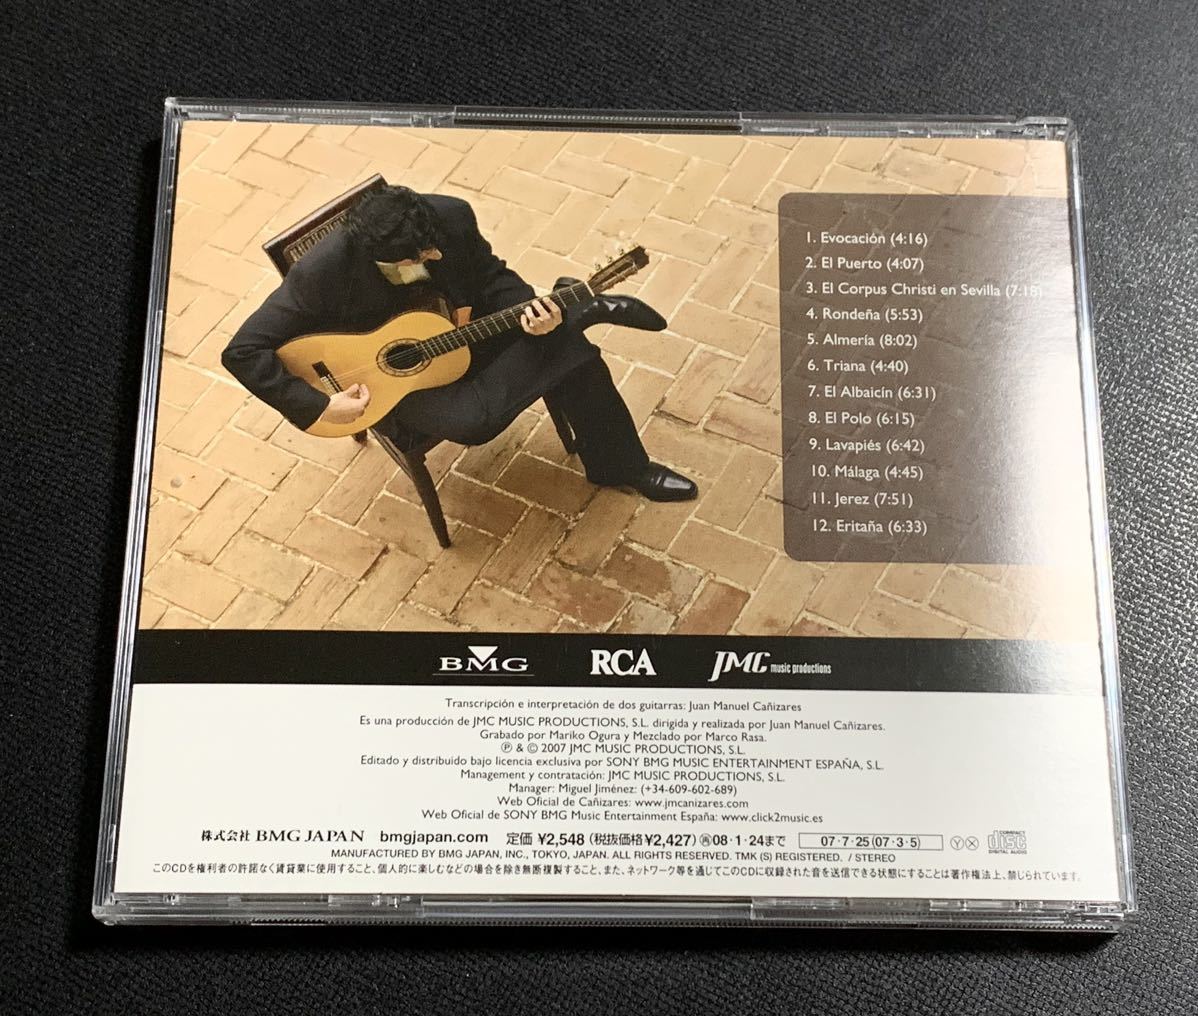 #10/美盤/帯付き/カニサレス(フラメンコギター) アルベニス:組曲『イベリア』/ Juan Manuel Caizares / CD_画像3